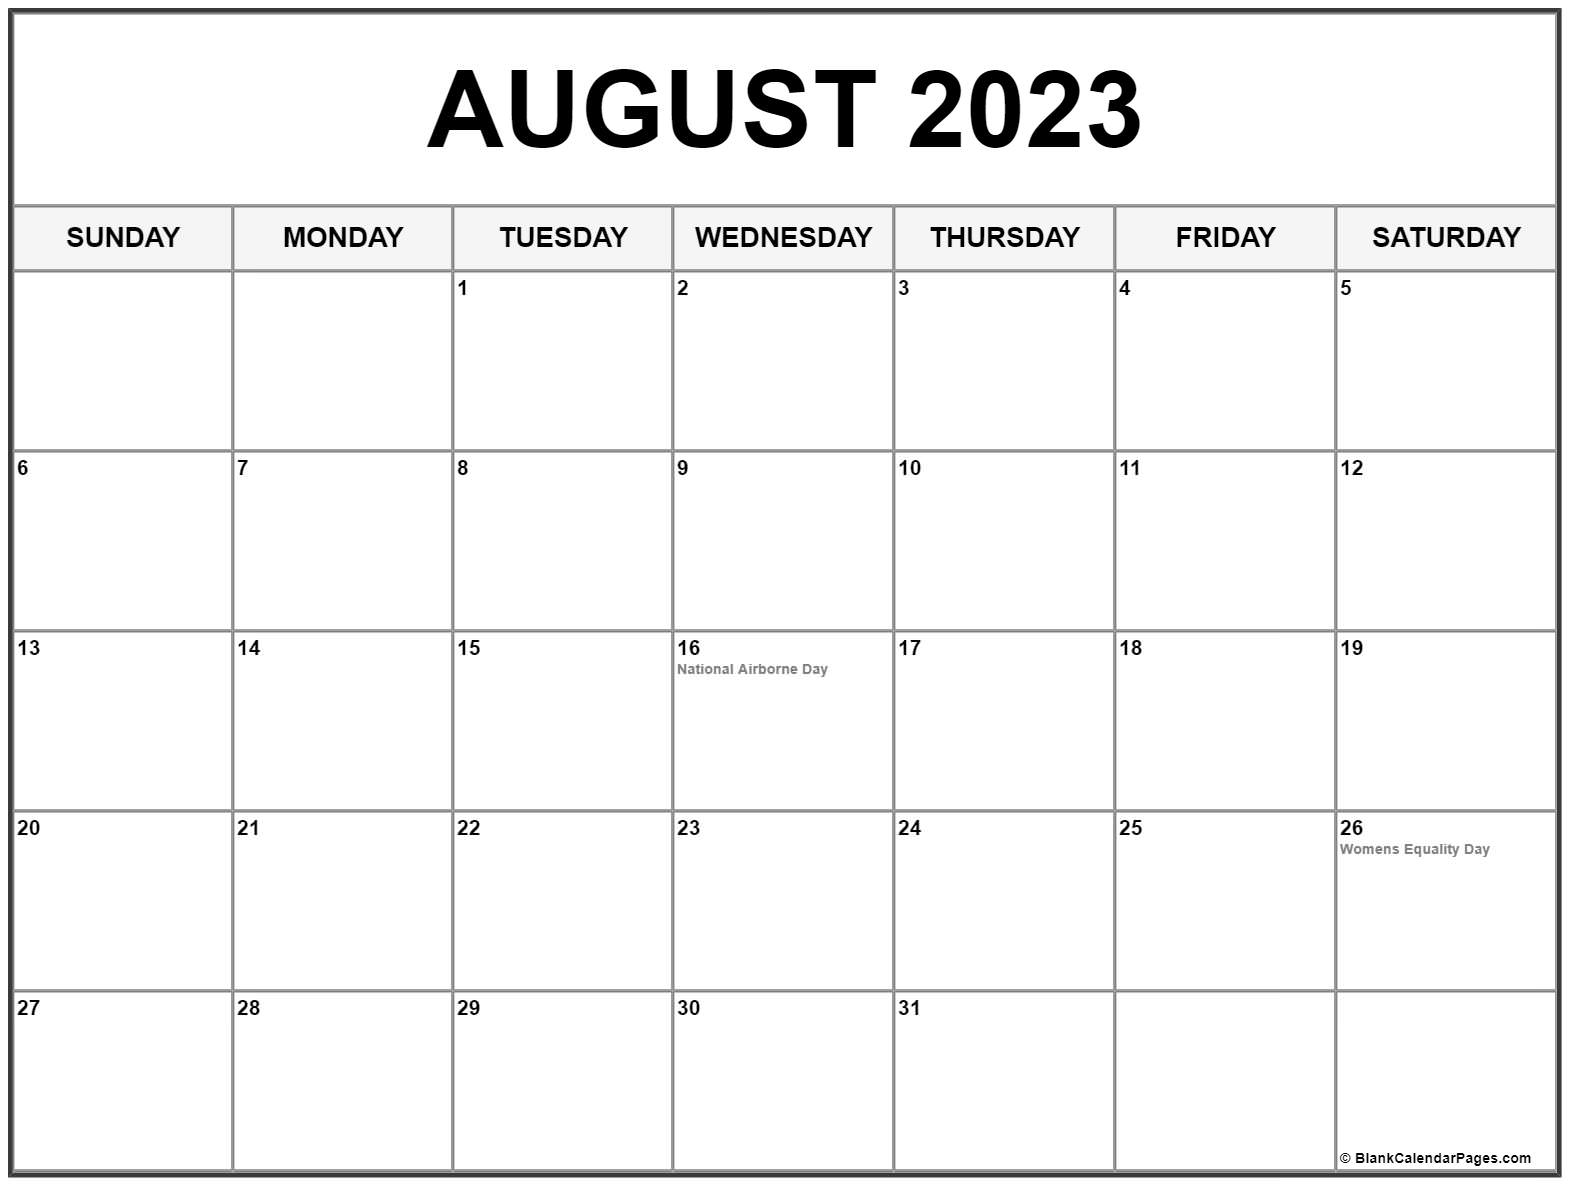 August 2023 Calendar With Holidays Get Calendar 2023 Update